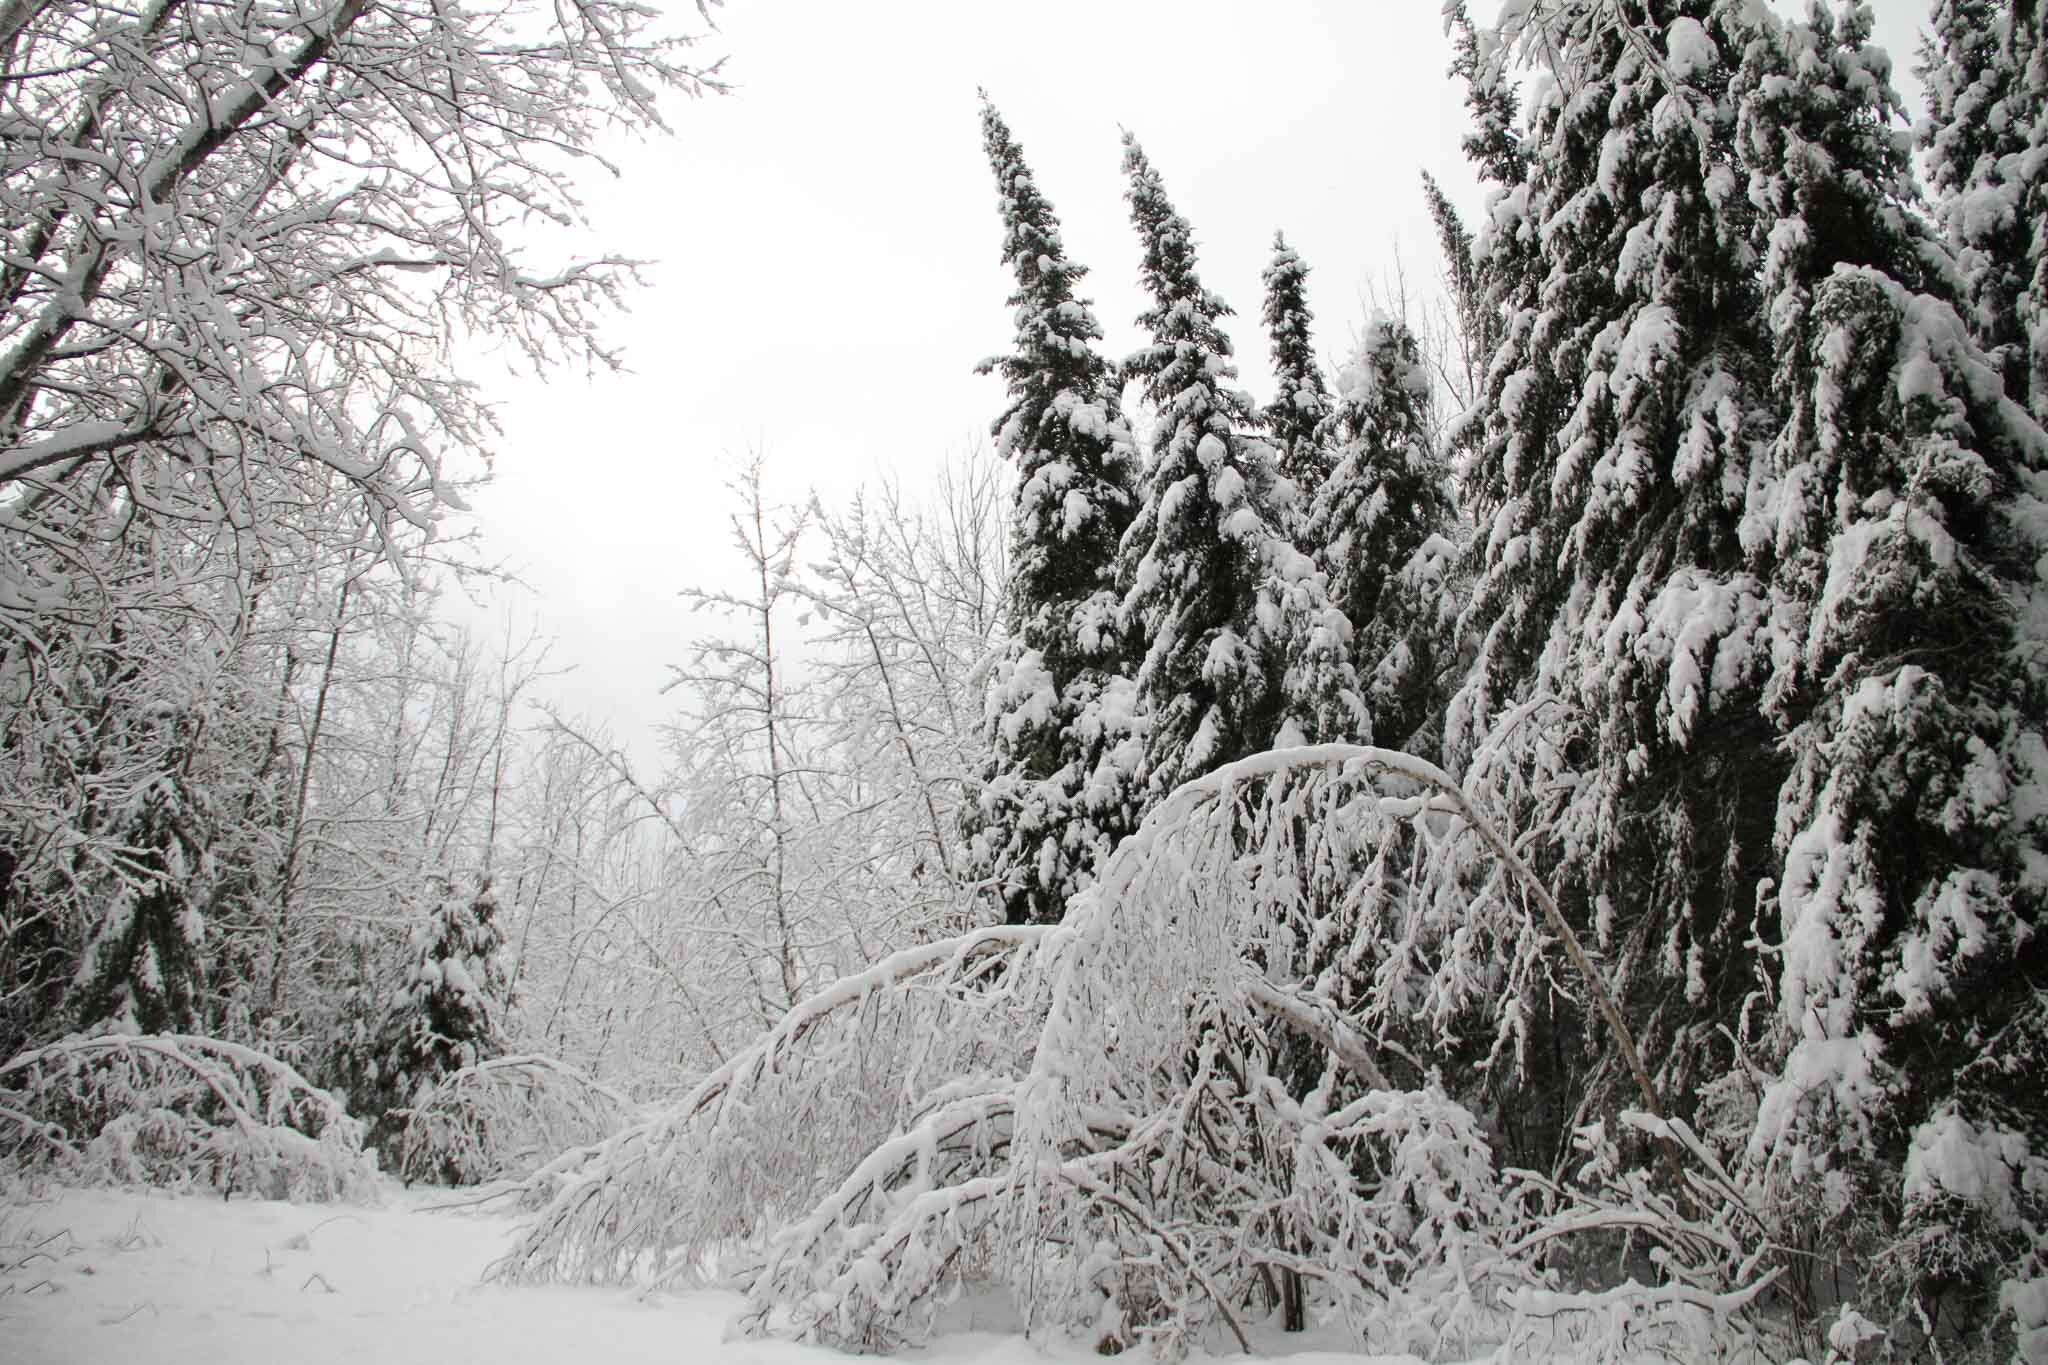  Winter trail, Neebing, Ont. 